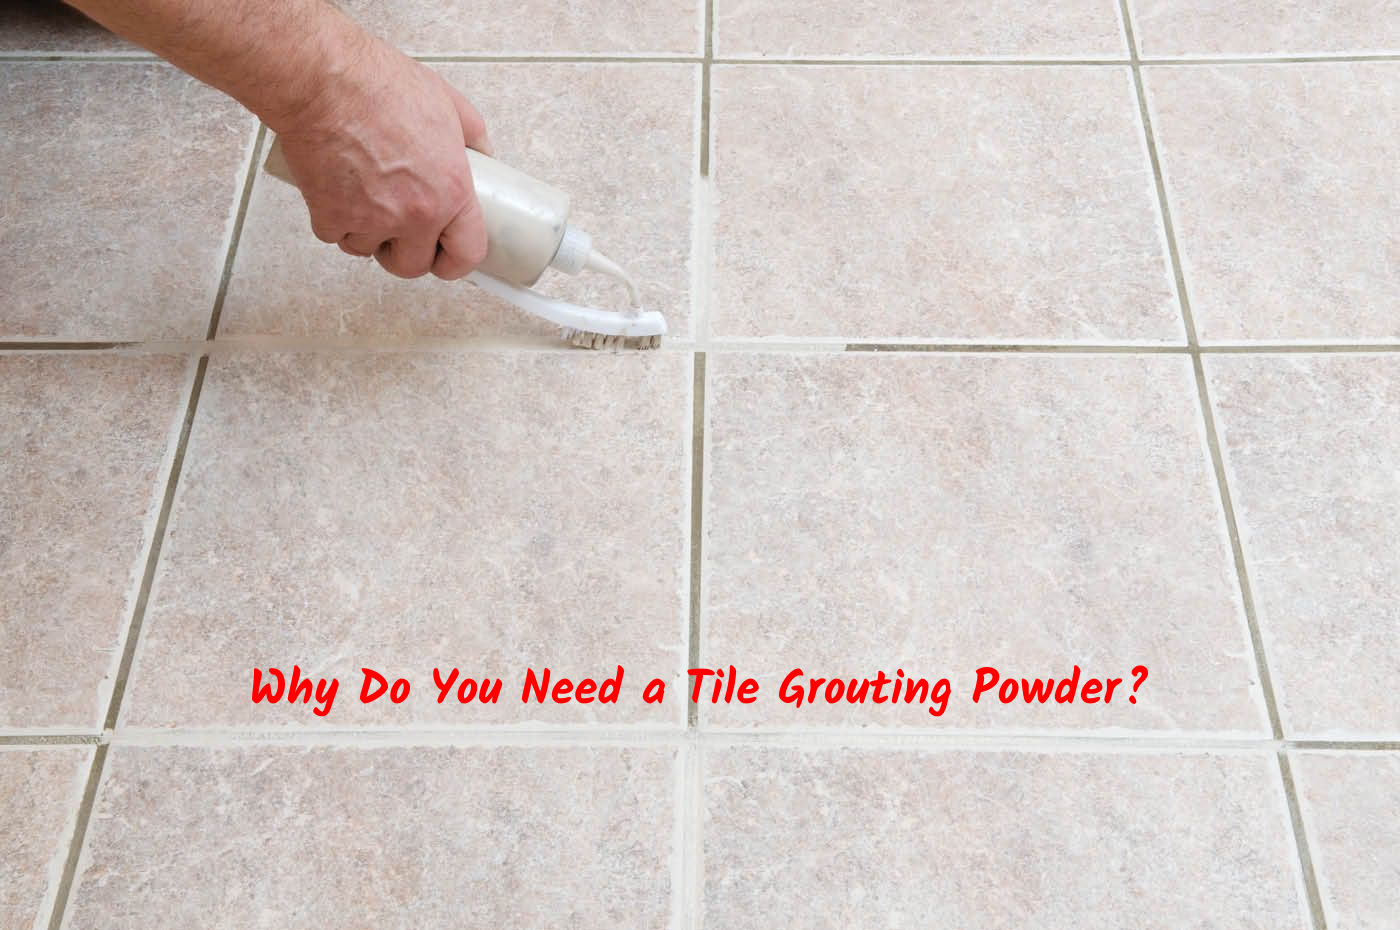 Tile Grouting Powder